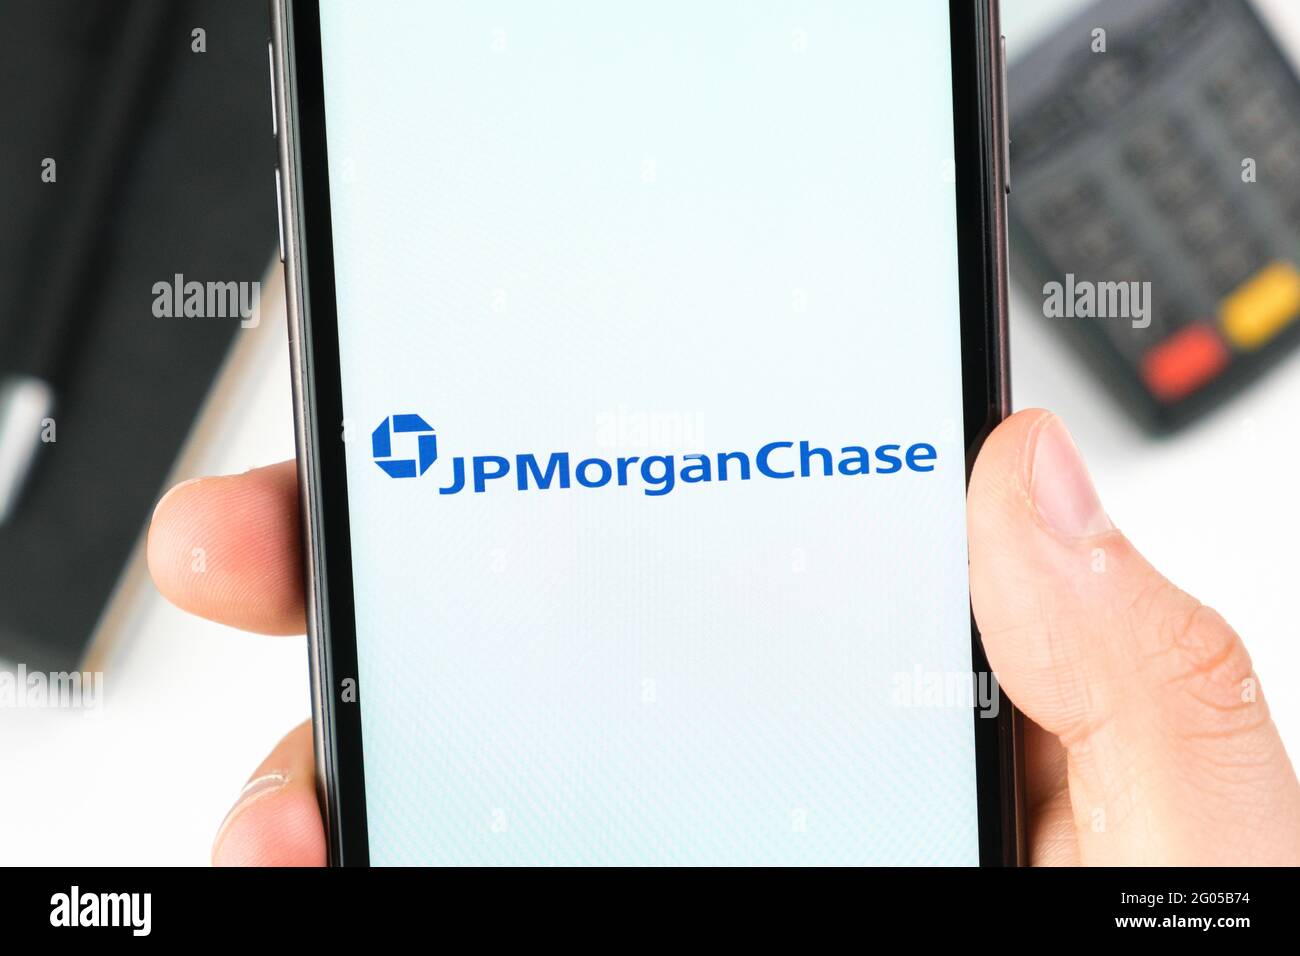 JP Morgan Chase banque logo sur l'écran du smartphone dans la main de mans sur l'arrière-plan du terminal de paiement, mai 2021, San Francisco, Etats-Unis Banque D'Images